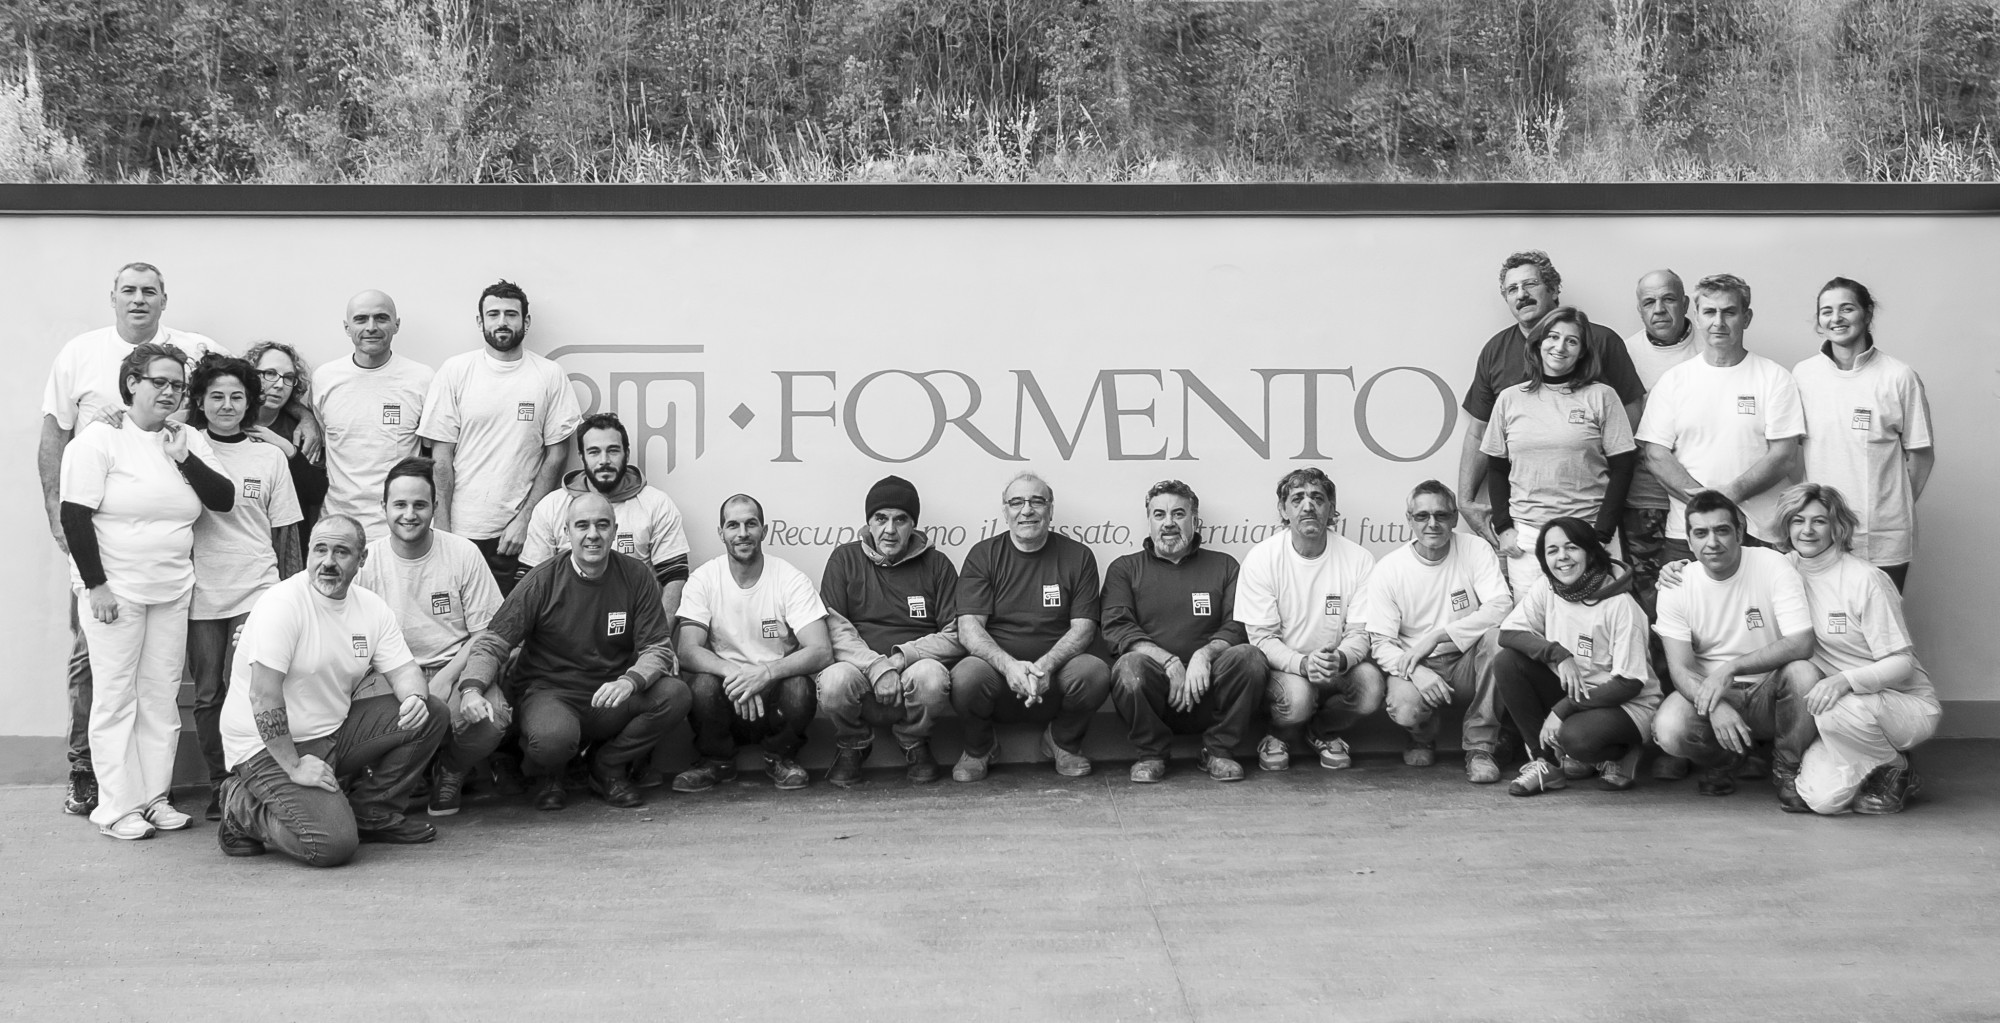 Formento Restauri è un'azienda ligure a conduzione familiare specializzata in ristrutturazioni e restauri dal 1959.